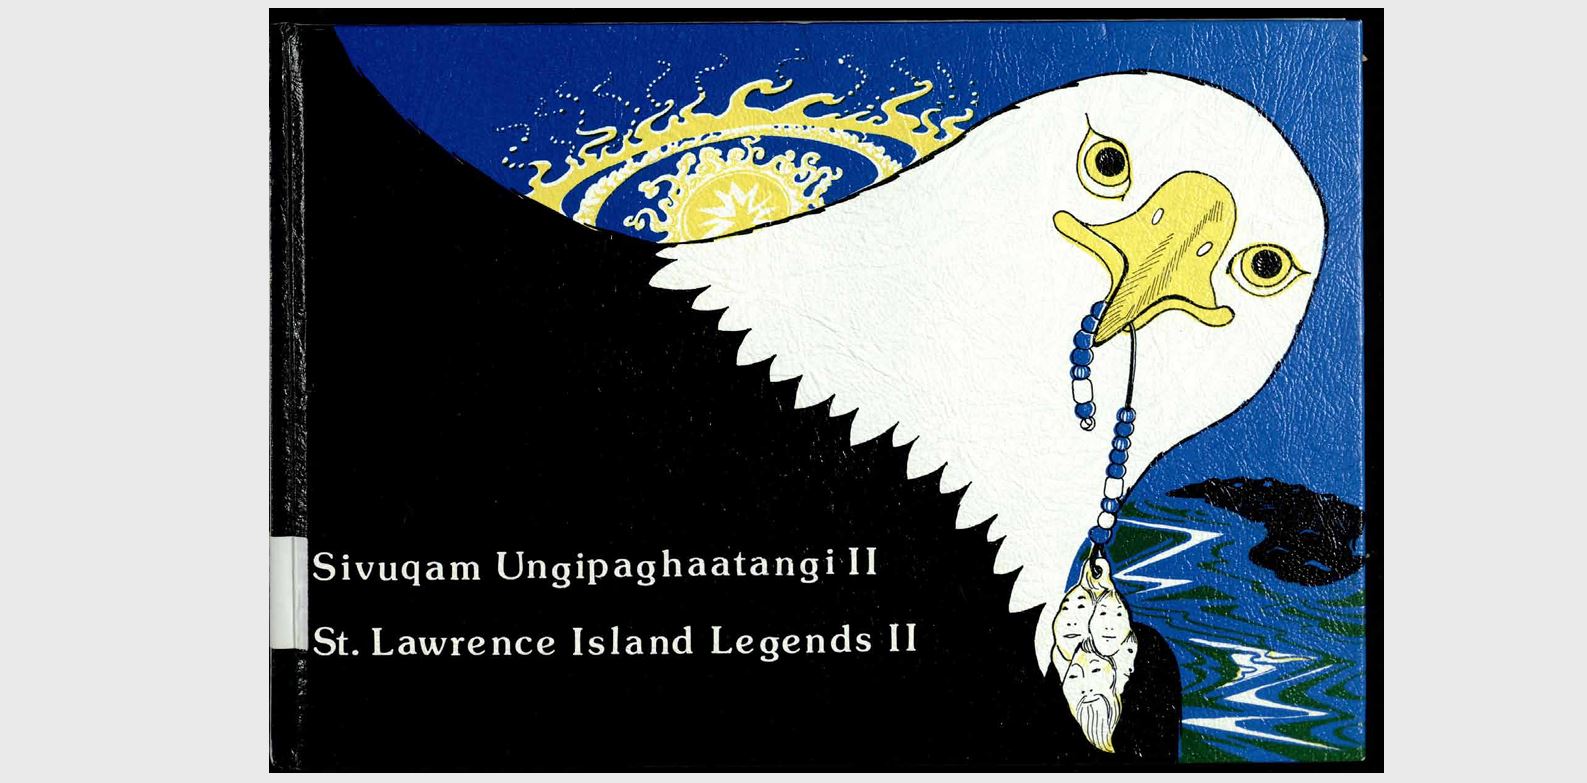 St. Lawrence Island Legends II (SIVUQAM UNGIPAGHAATANGI II) 